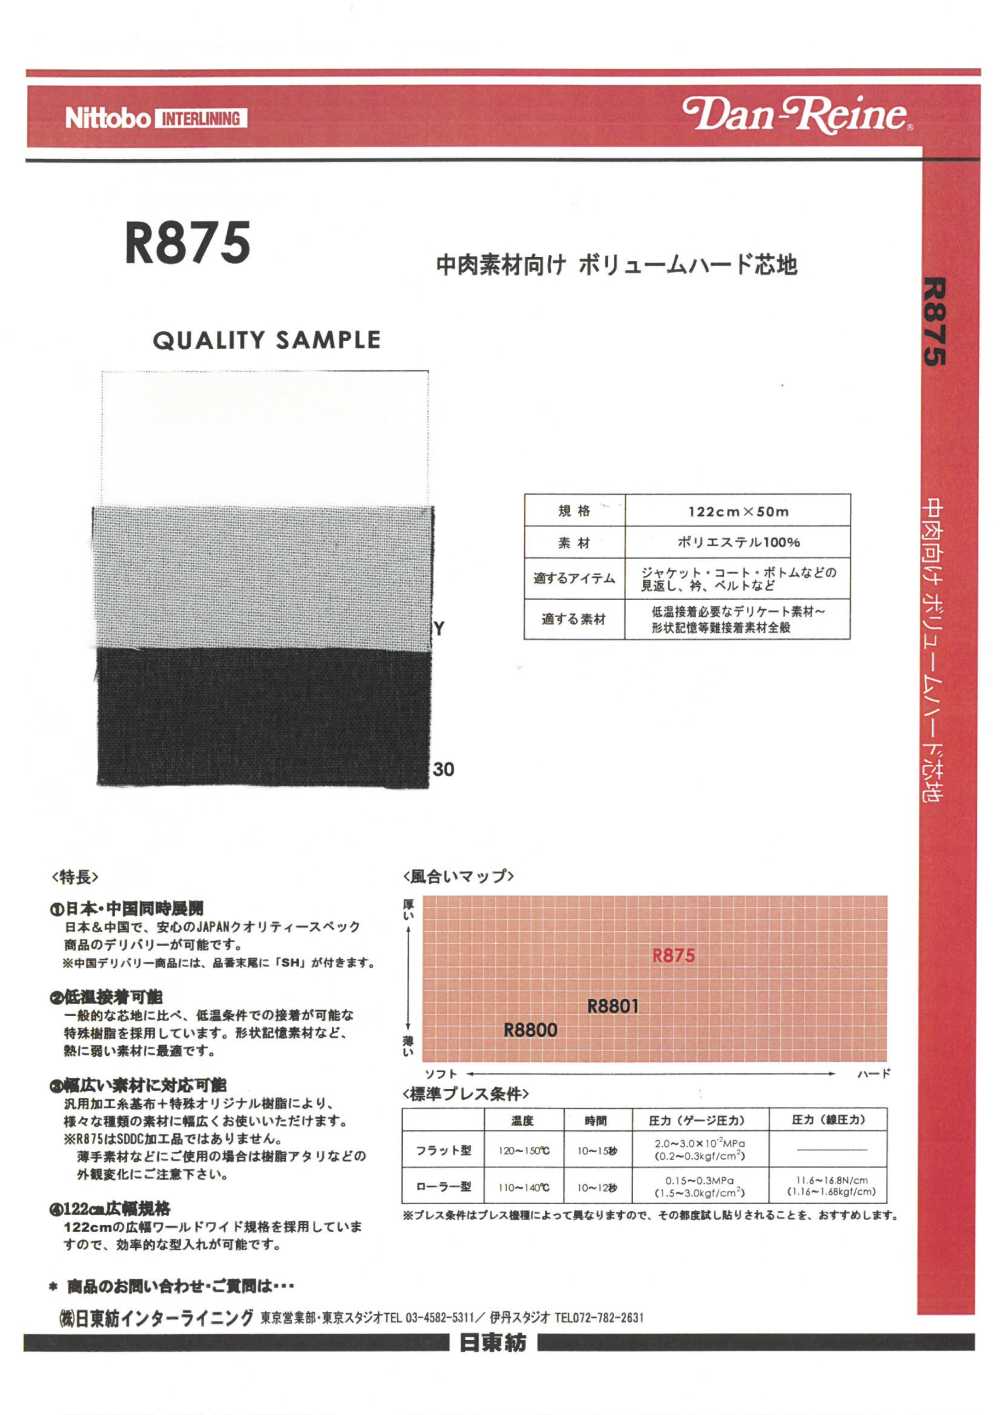 R875 Entretela Dura De Volumen Para Materiales De Espesor Medio Nittobo